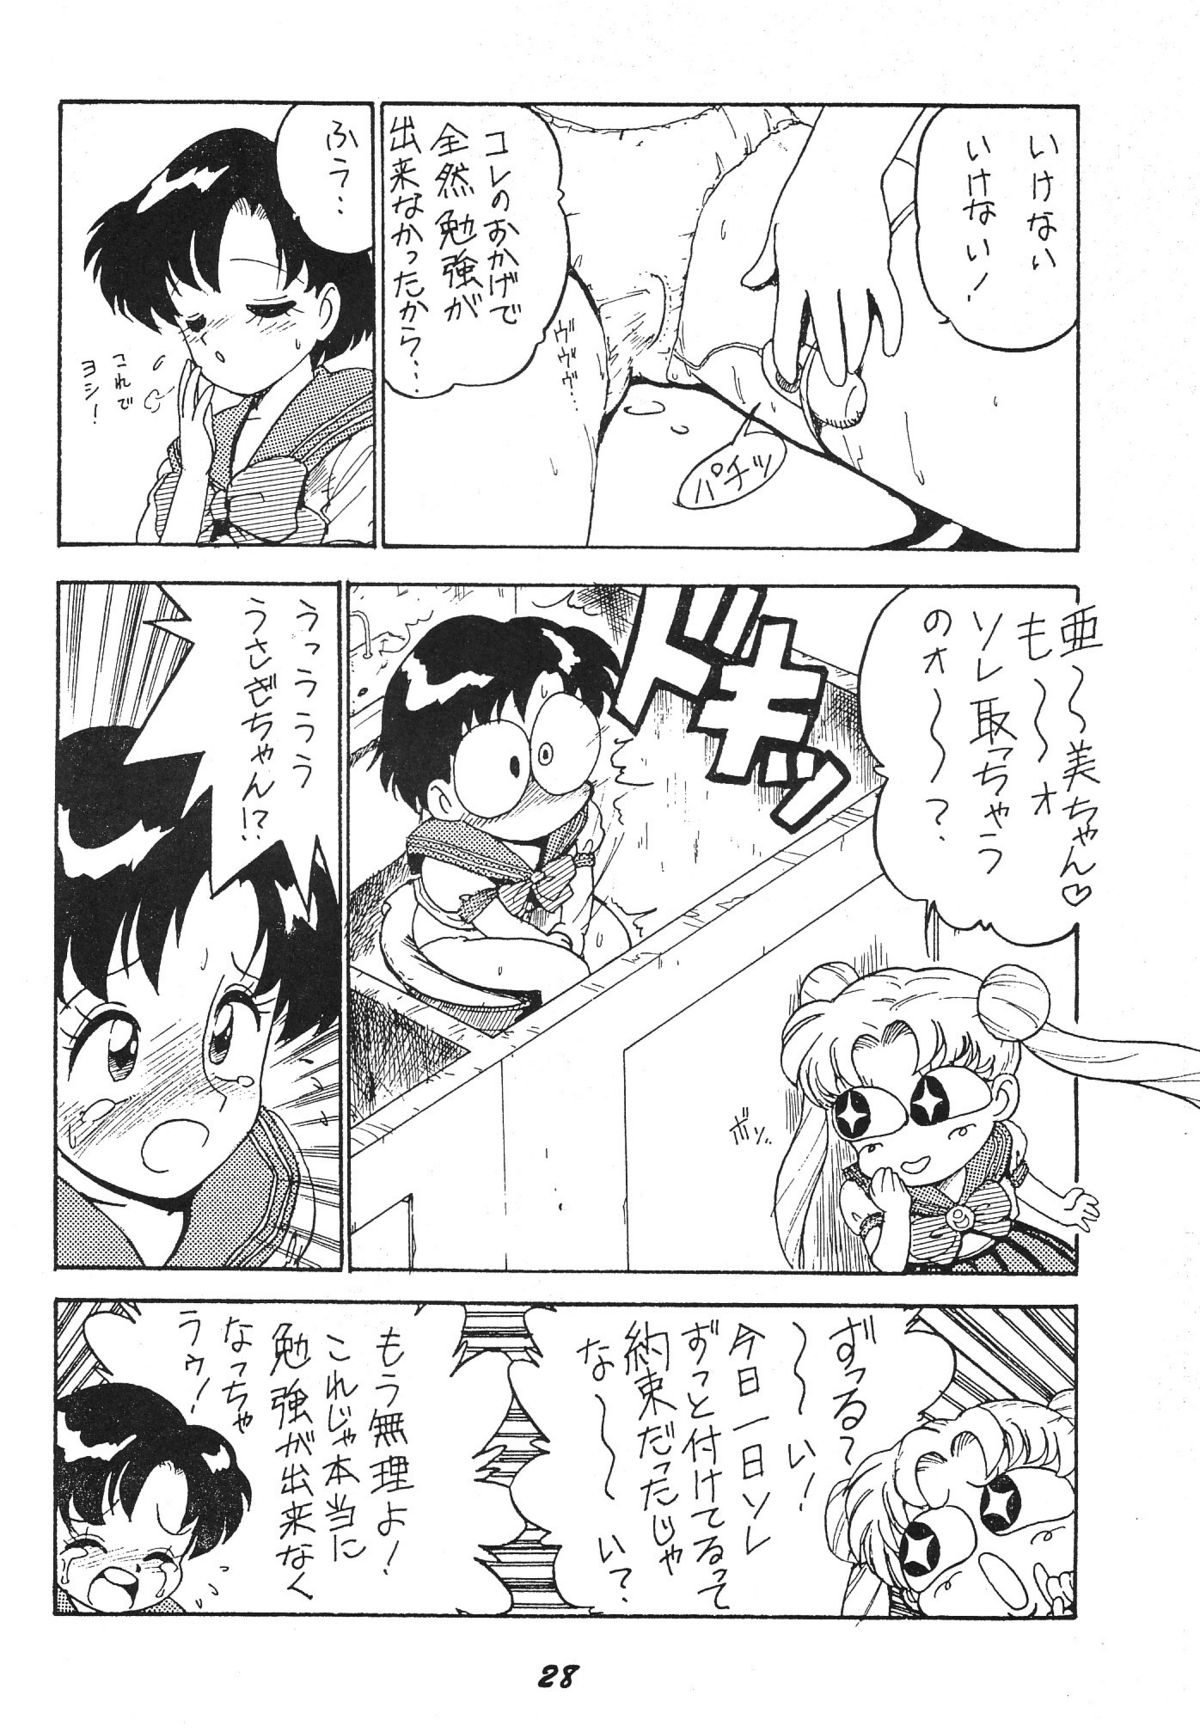 (CR15) [Karmaya (Karma Tatsurou)] Kaniku (Various) page 28 full